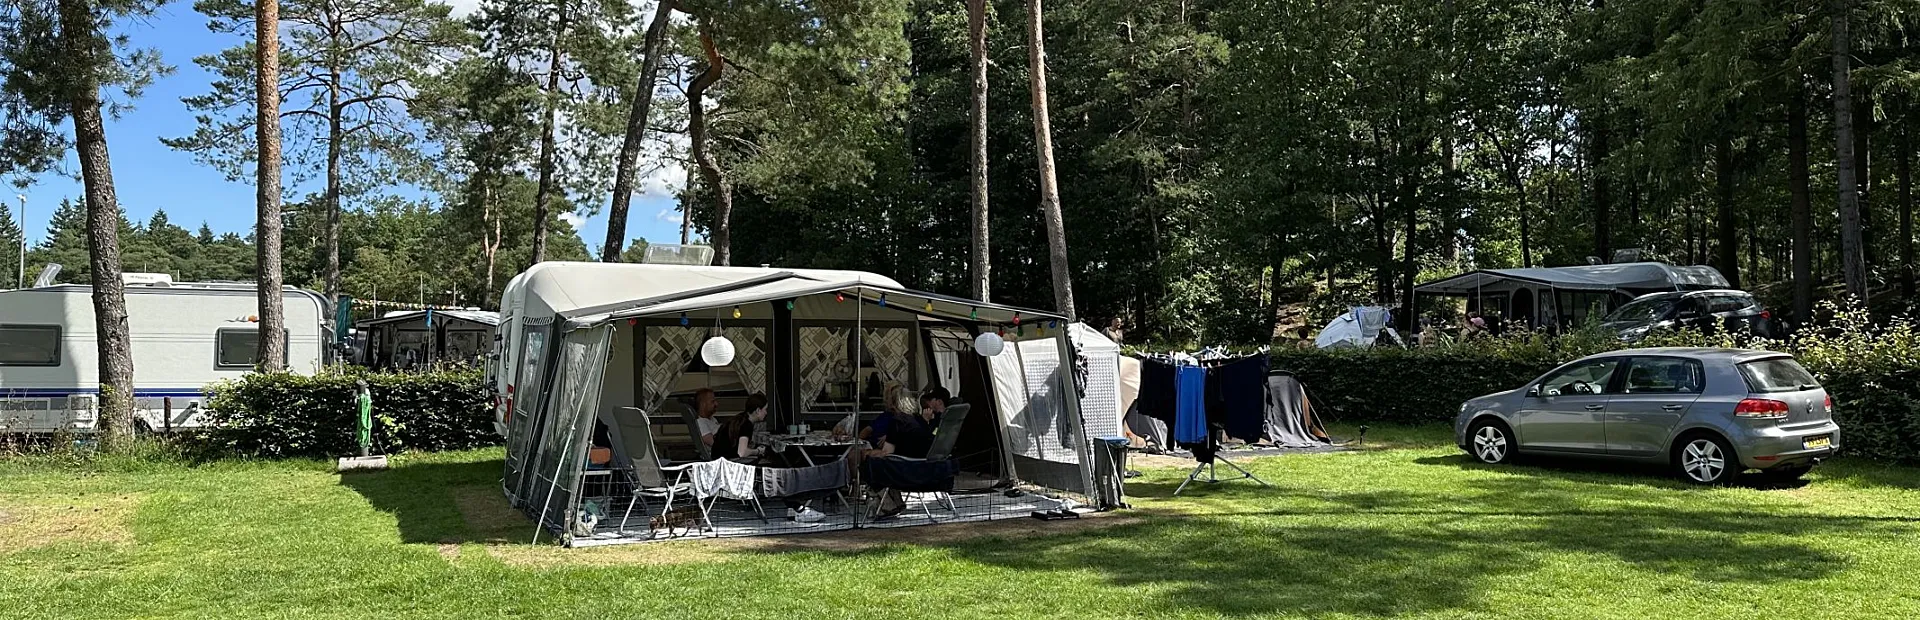 Camping Veluwe kampeerplaats Putter 33